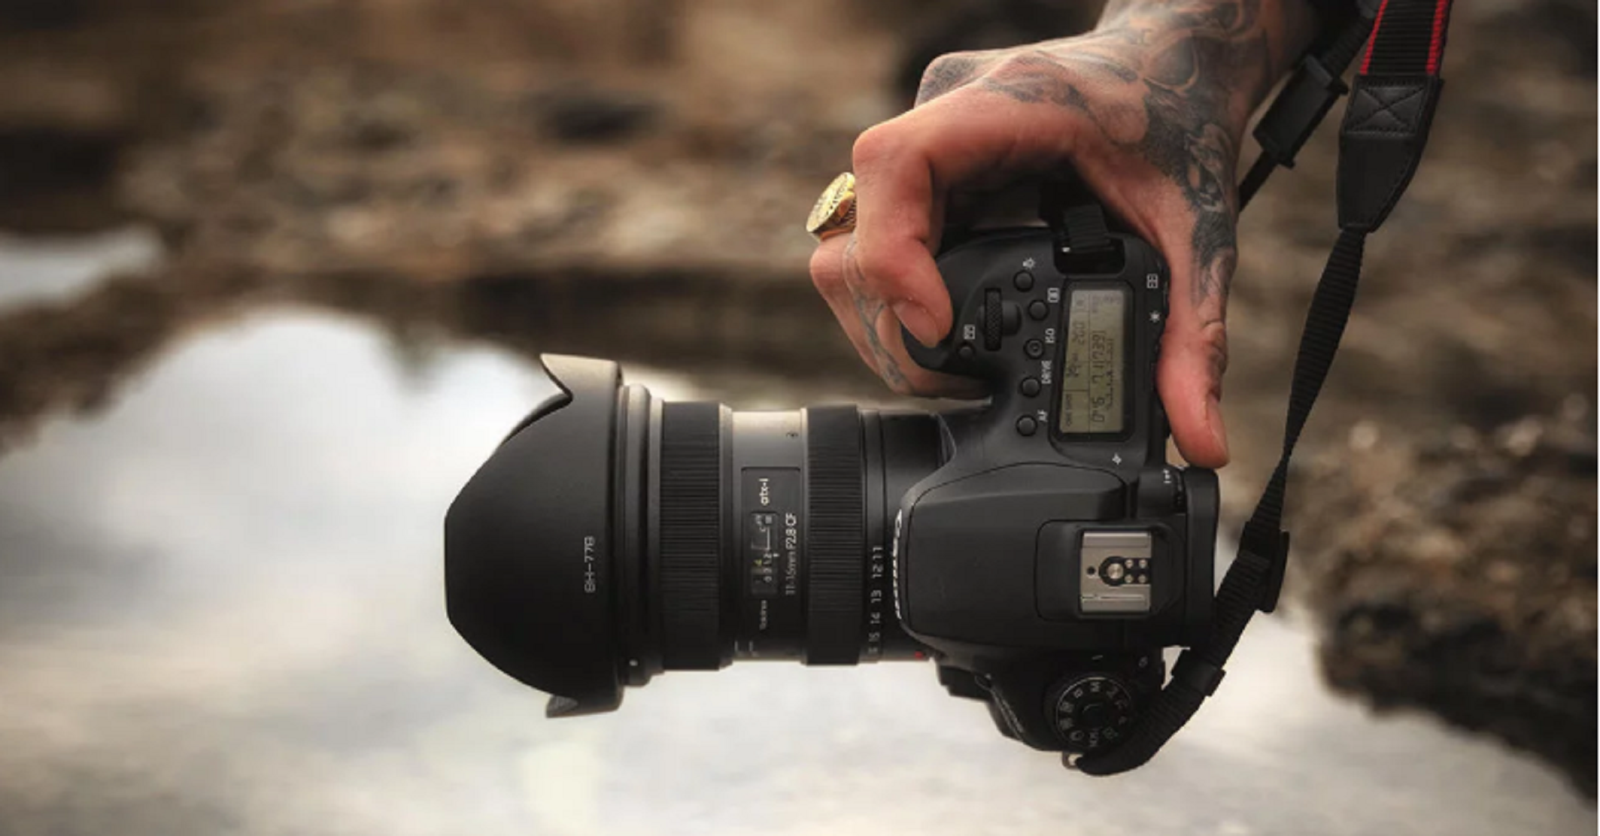 Tokina ra mắt ống kính atx-i 11-16mm f/2.8 CF cho Canon EF-S và Nikon F